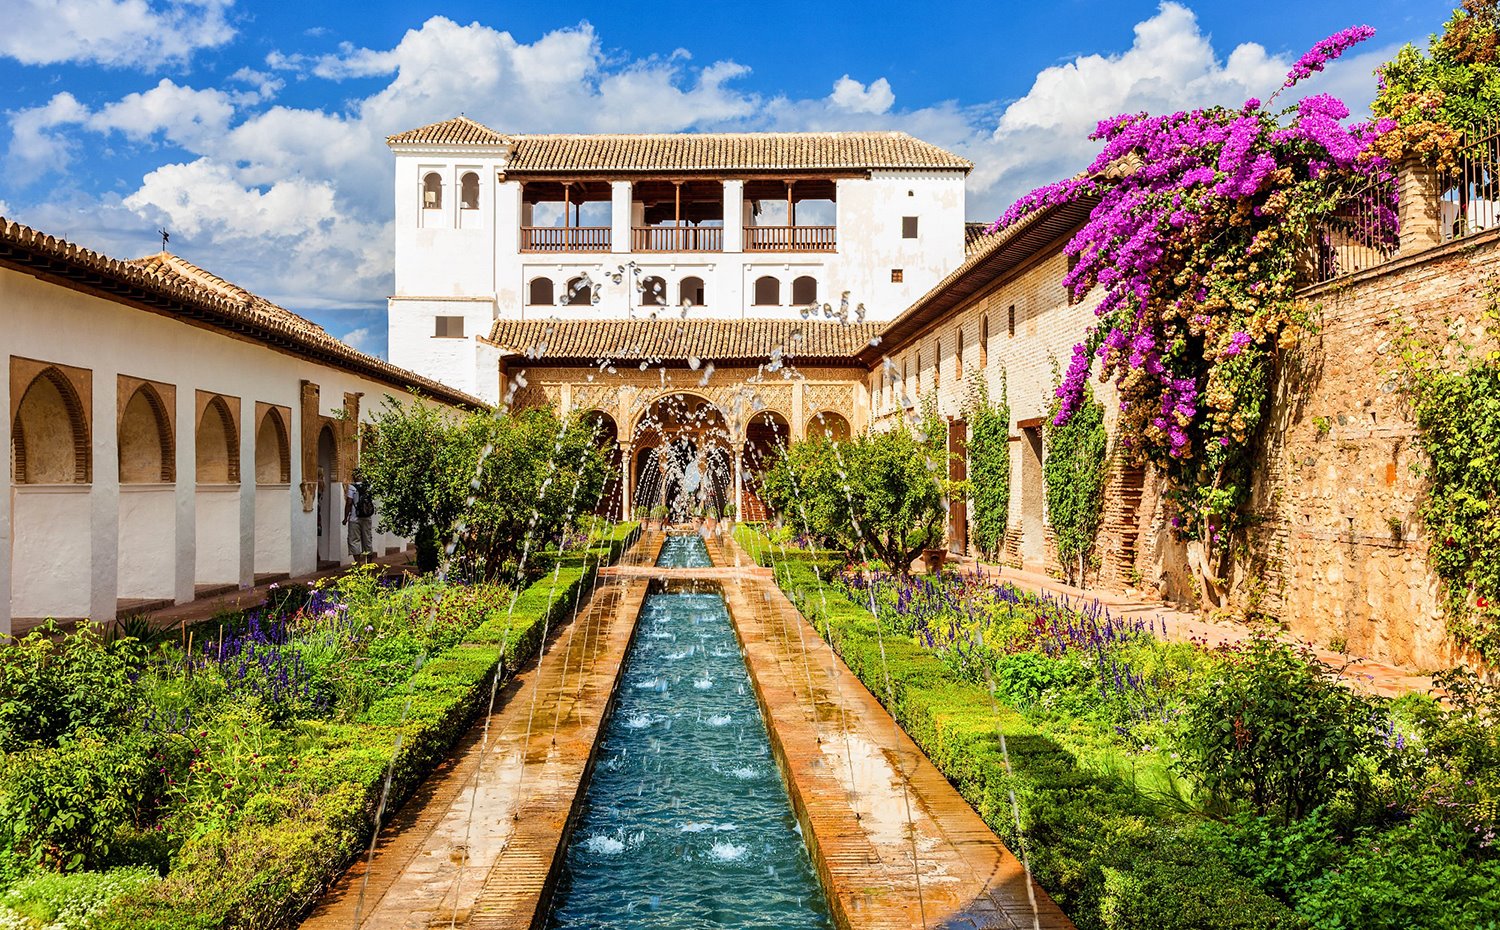 En España existe un ejemplo perfecto de slow garden: los jardines de la Alhambra en Granada